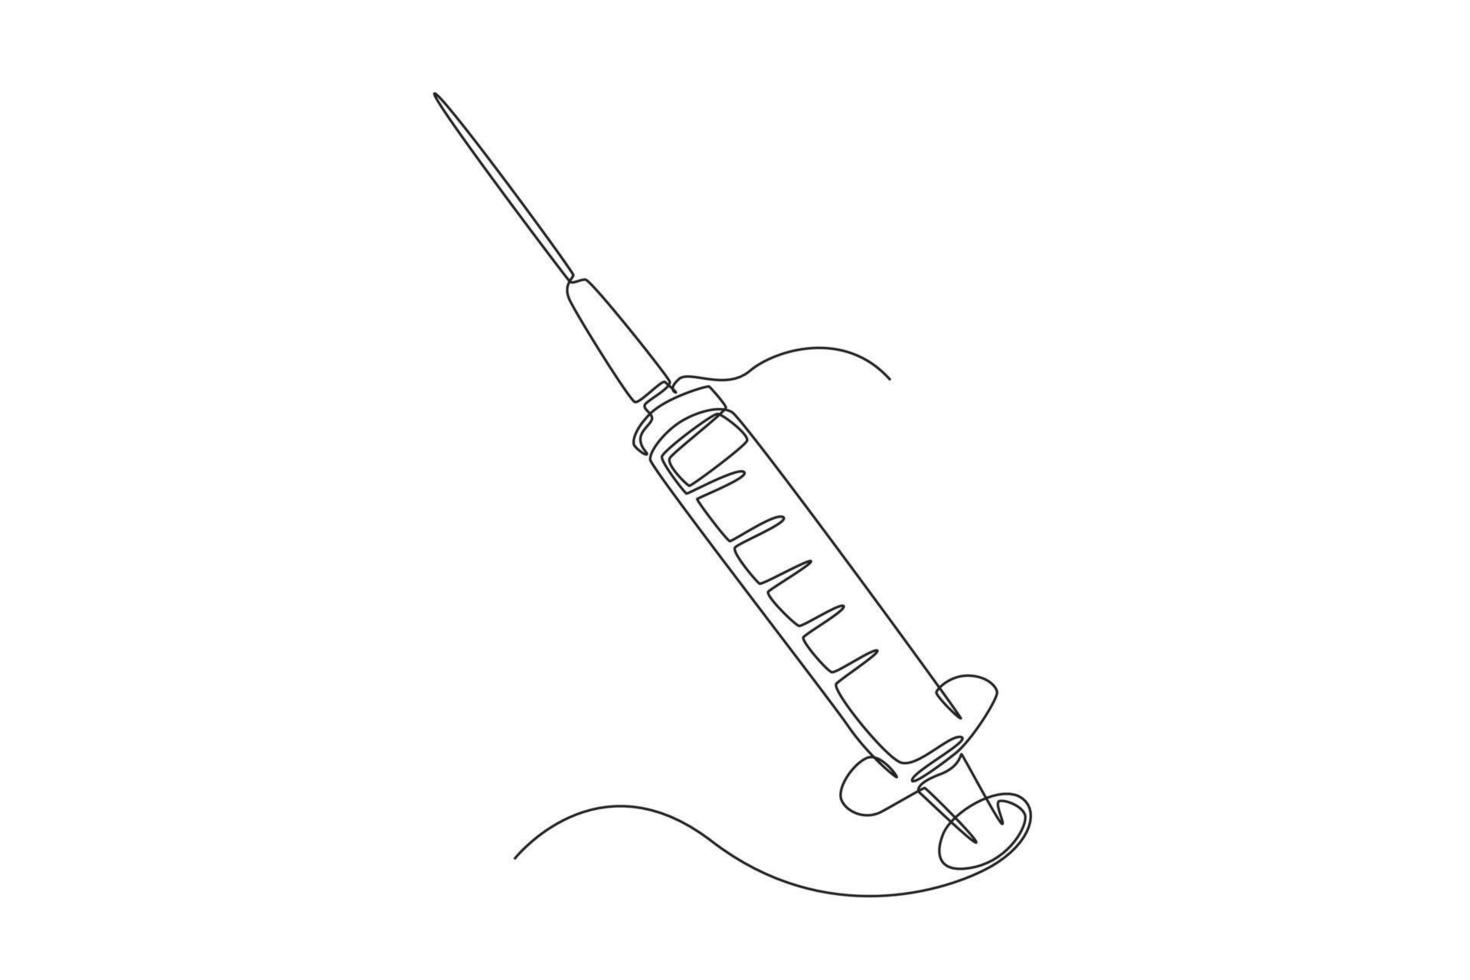 einzelne einzeilige Zeichnung medizinische Spritze. Die Spritze ist mit einer Impfstofflösung gefüllt. medizinisches gerätekonzept. ununterbrochene Linie zeichnen grafische Vektorillustration des Designs. vektor